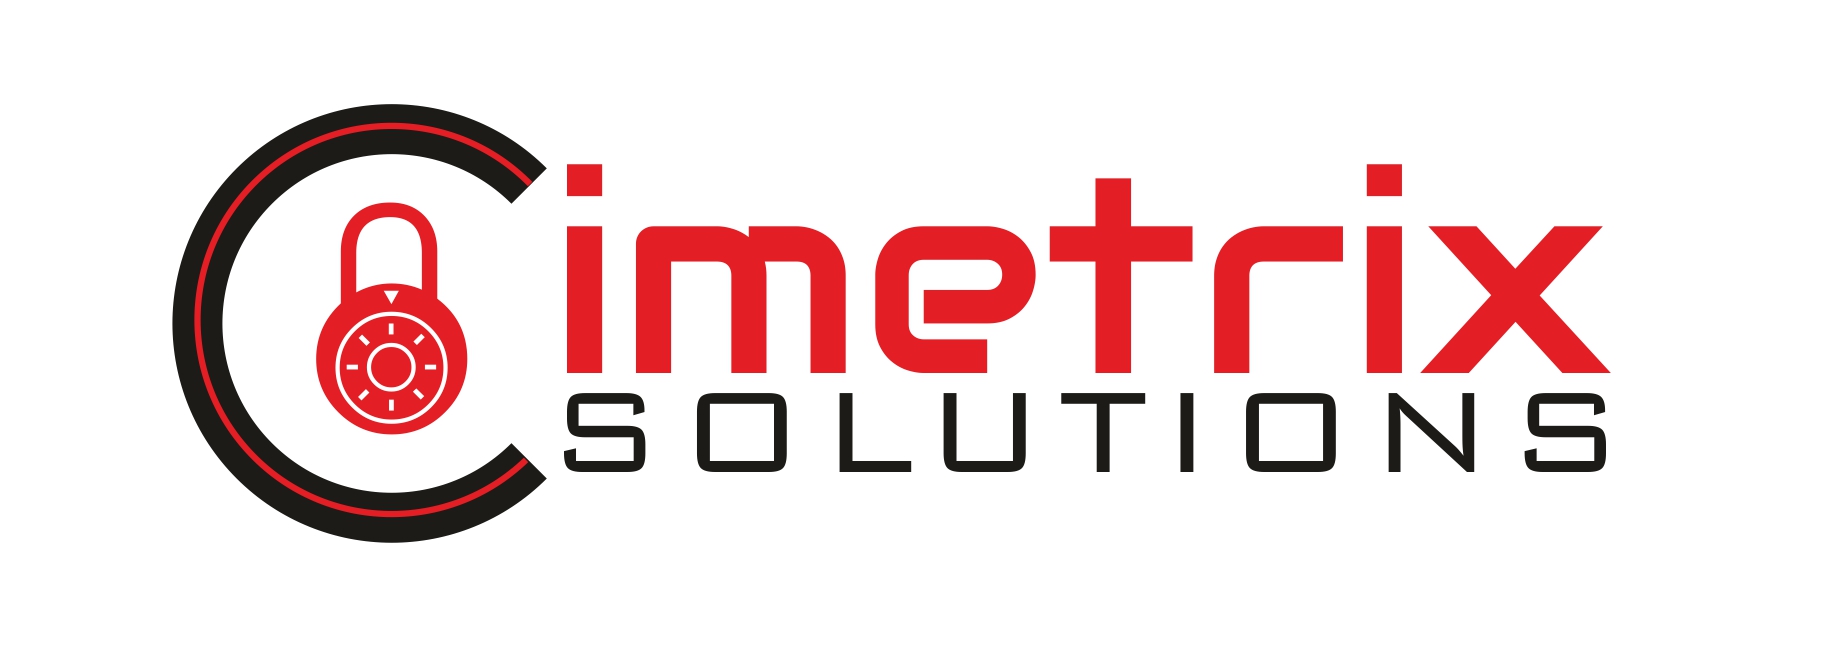 Cimetrix Solutions